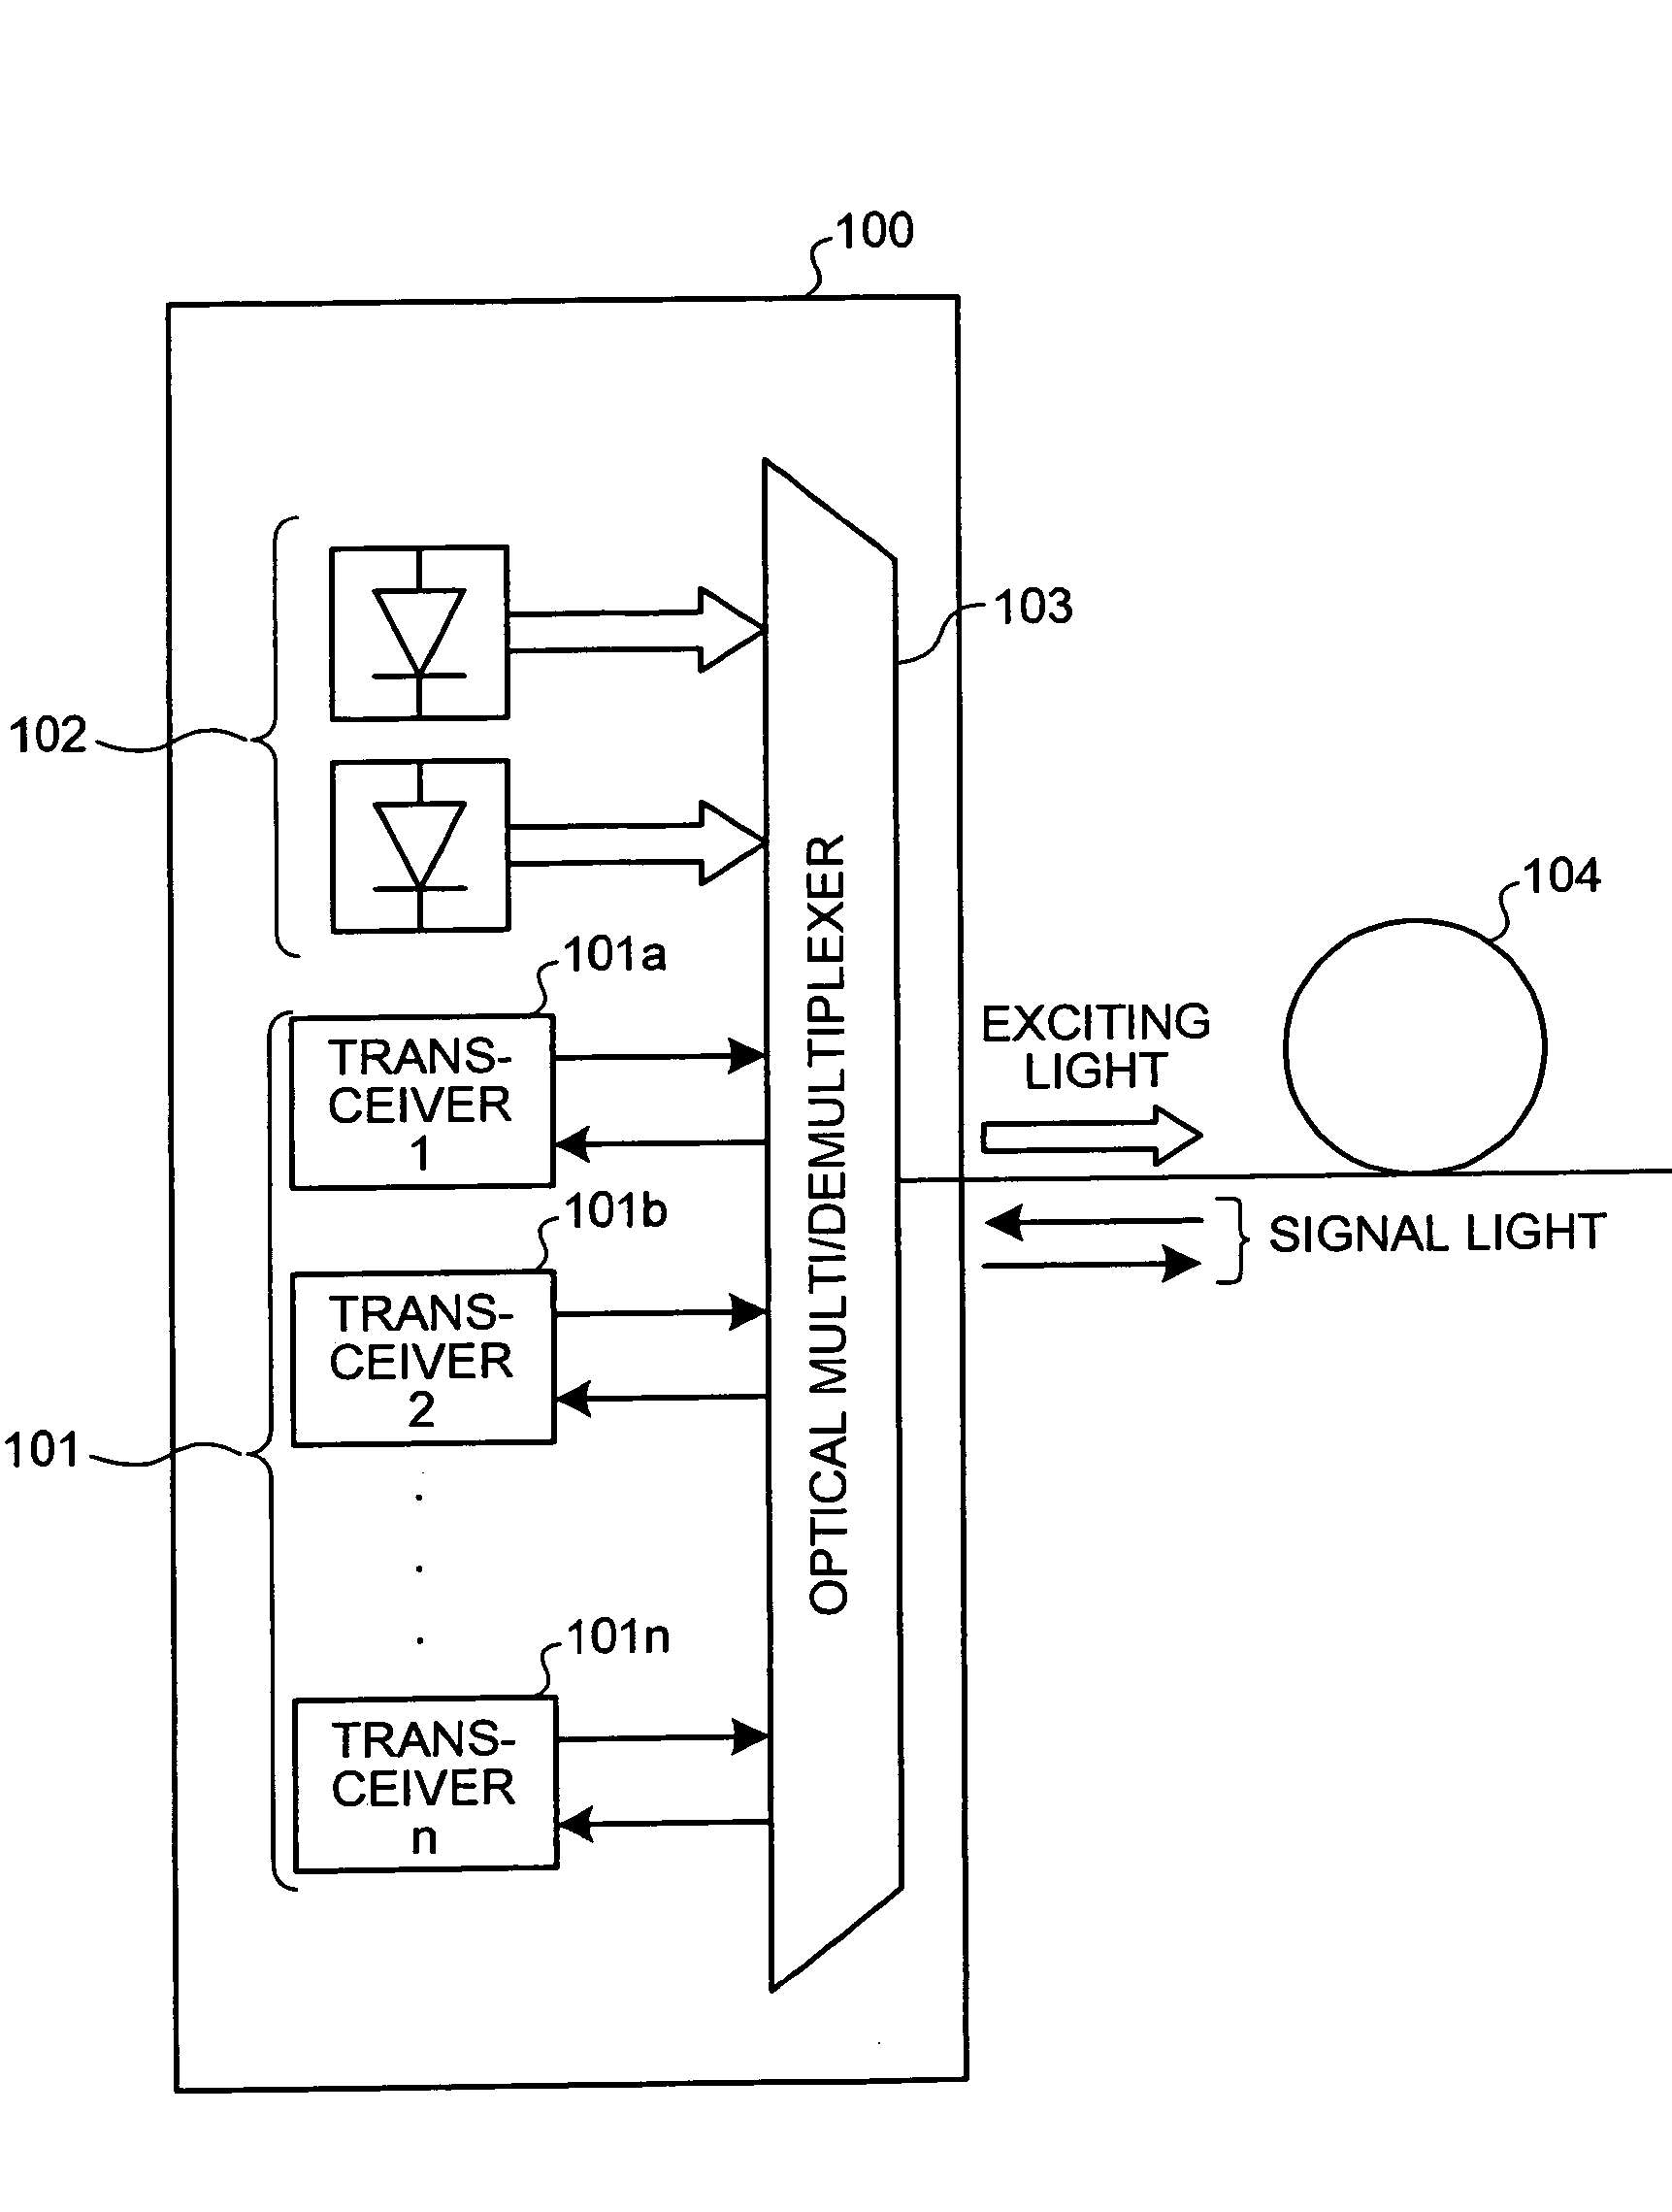 Optical terminal apparatus